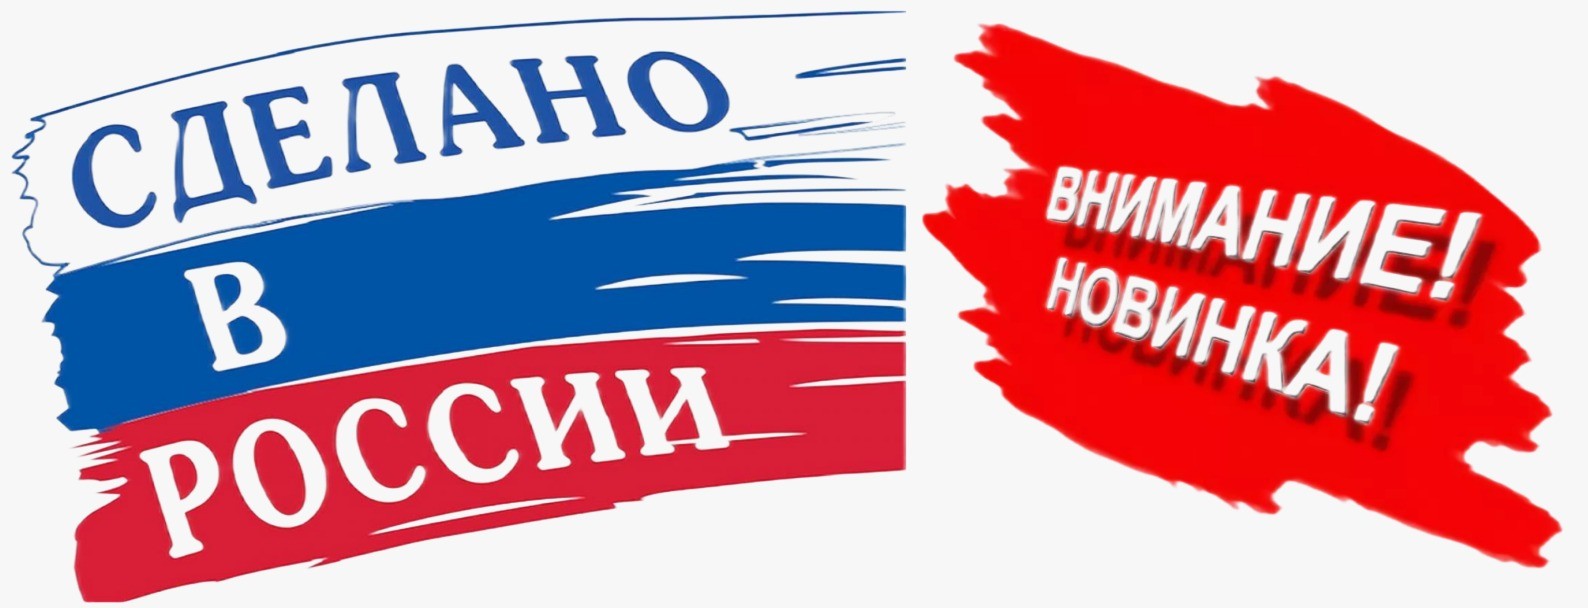 БОЛЬШОЙ рекламный баннер THRMOCASE PRO, сделано в России